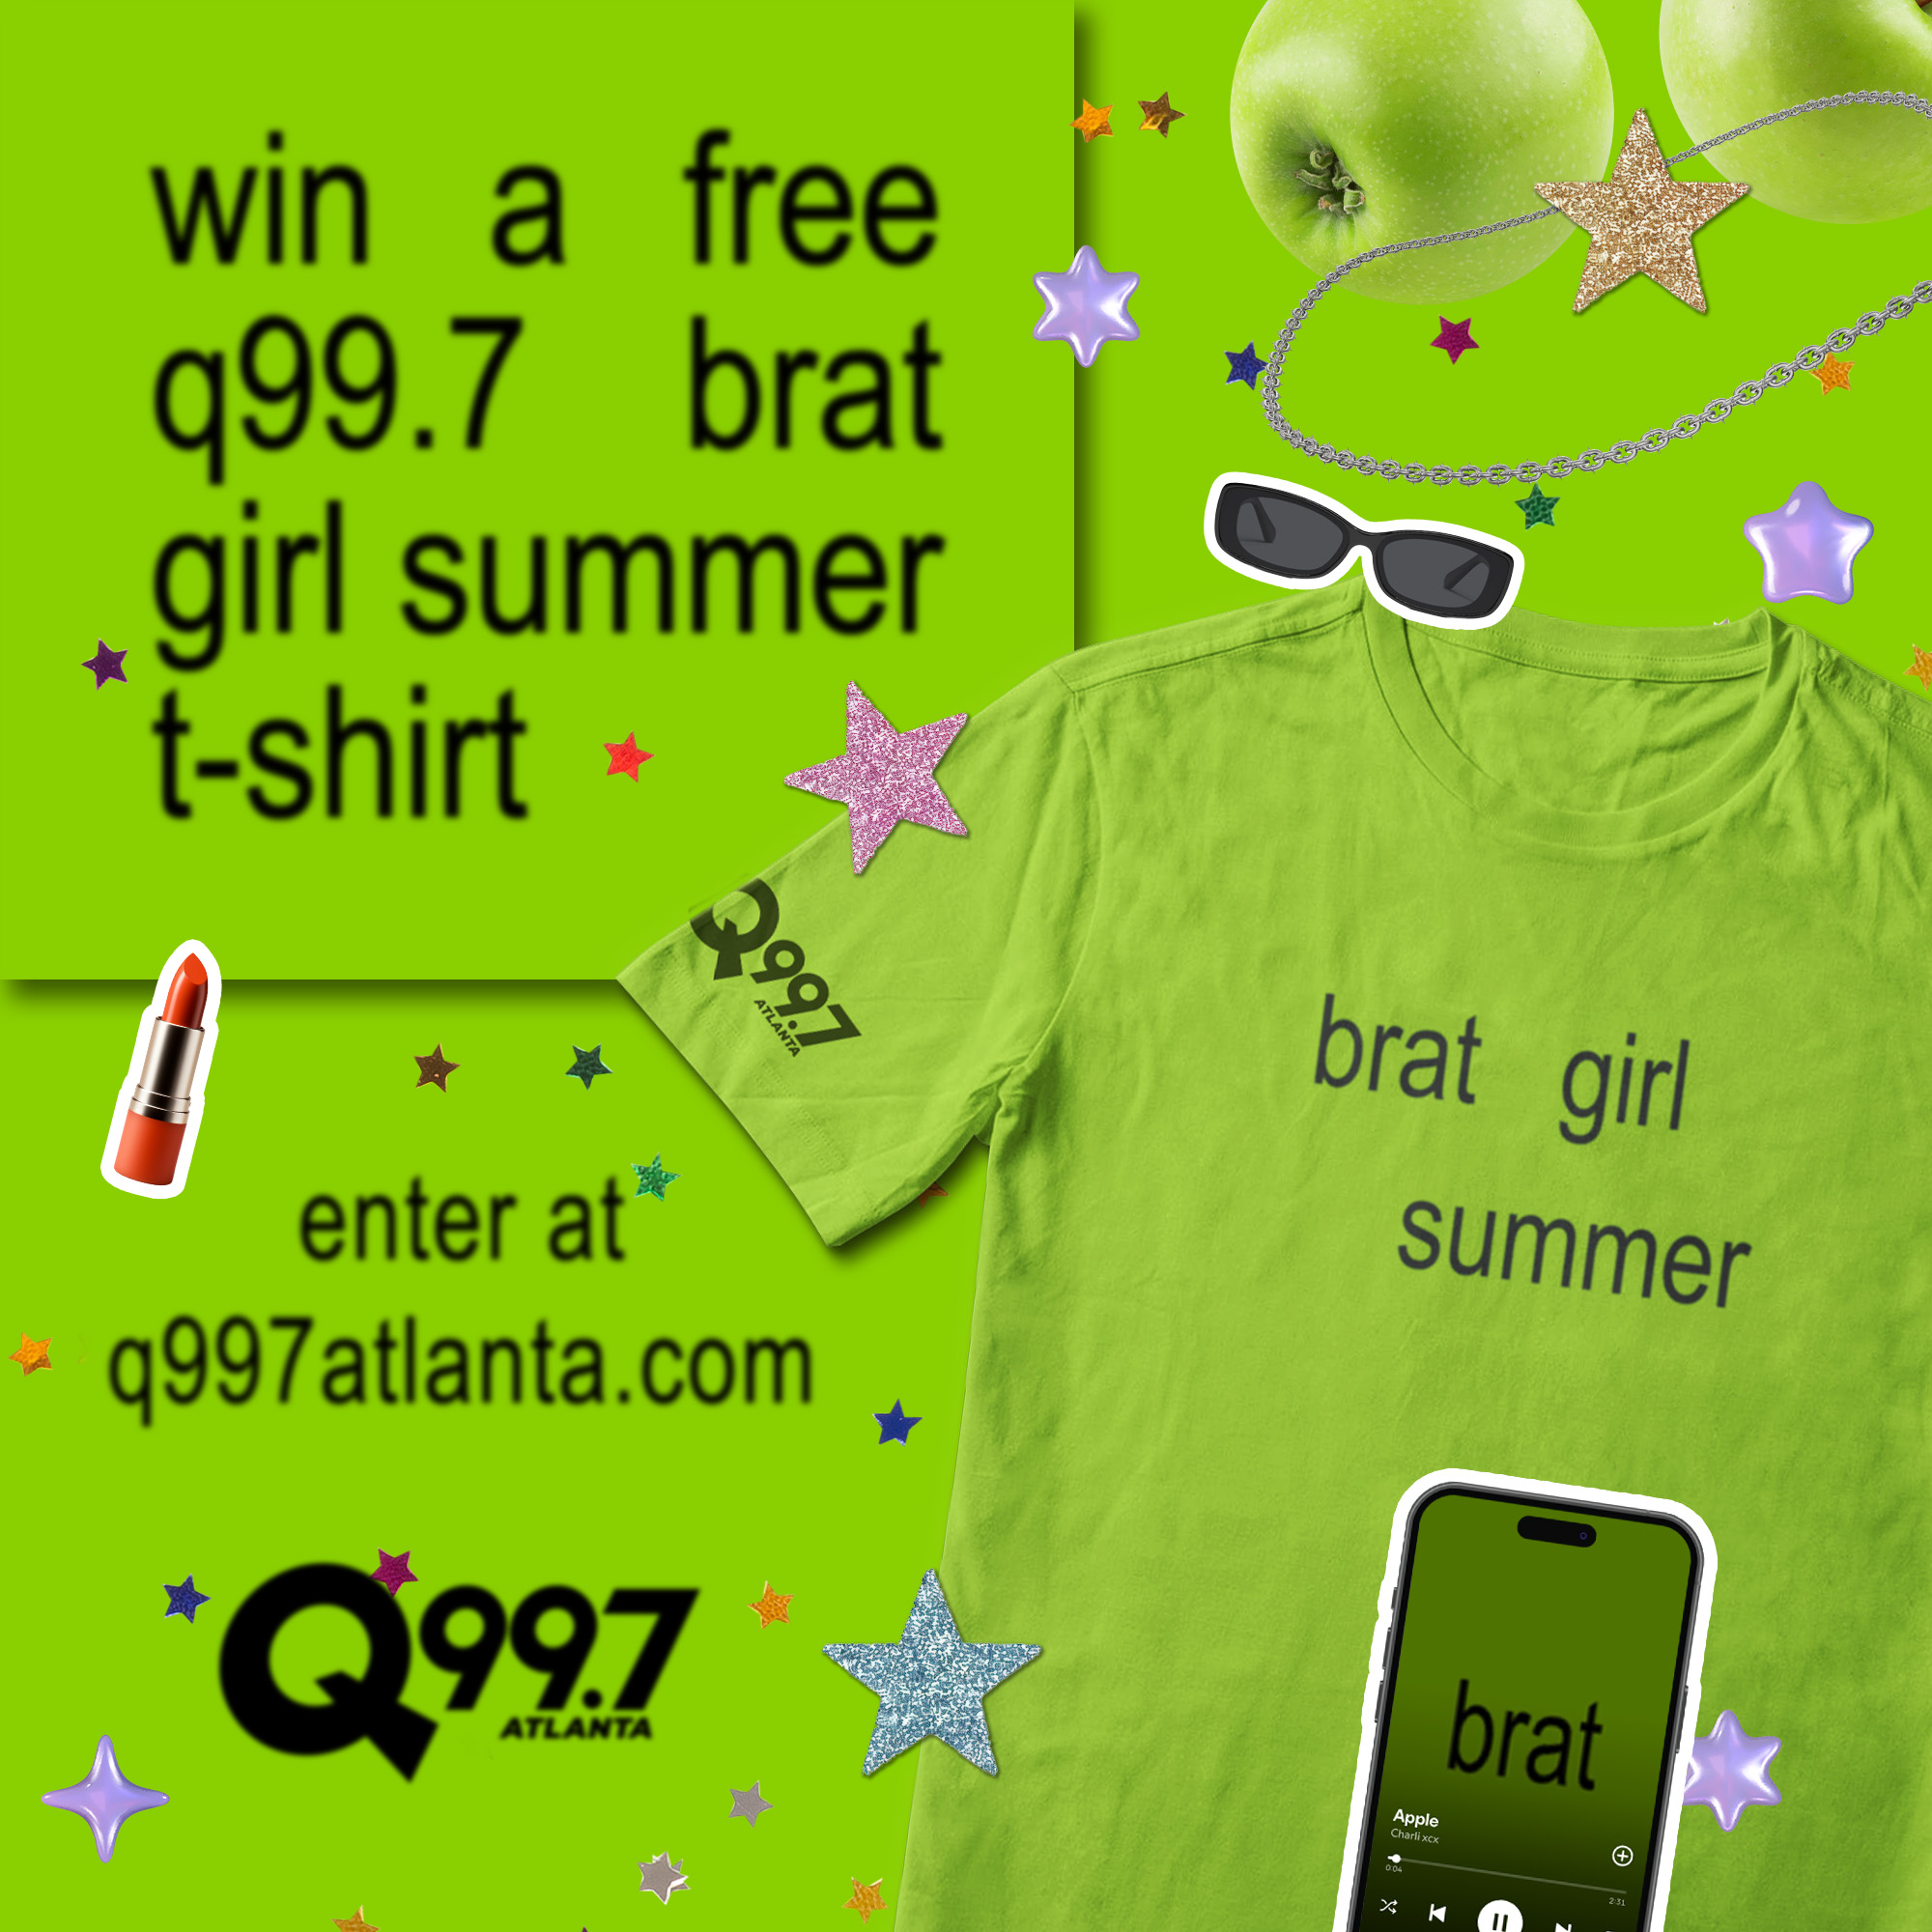 Win a Q99.7 Brat Girl Summer T-Shirt!